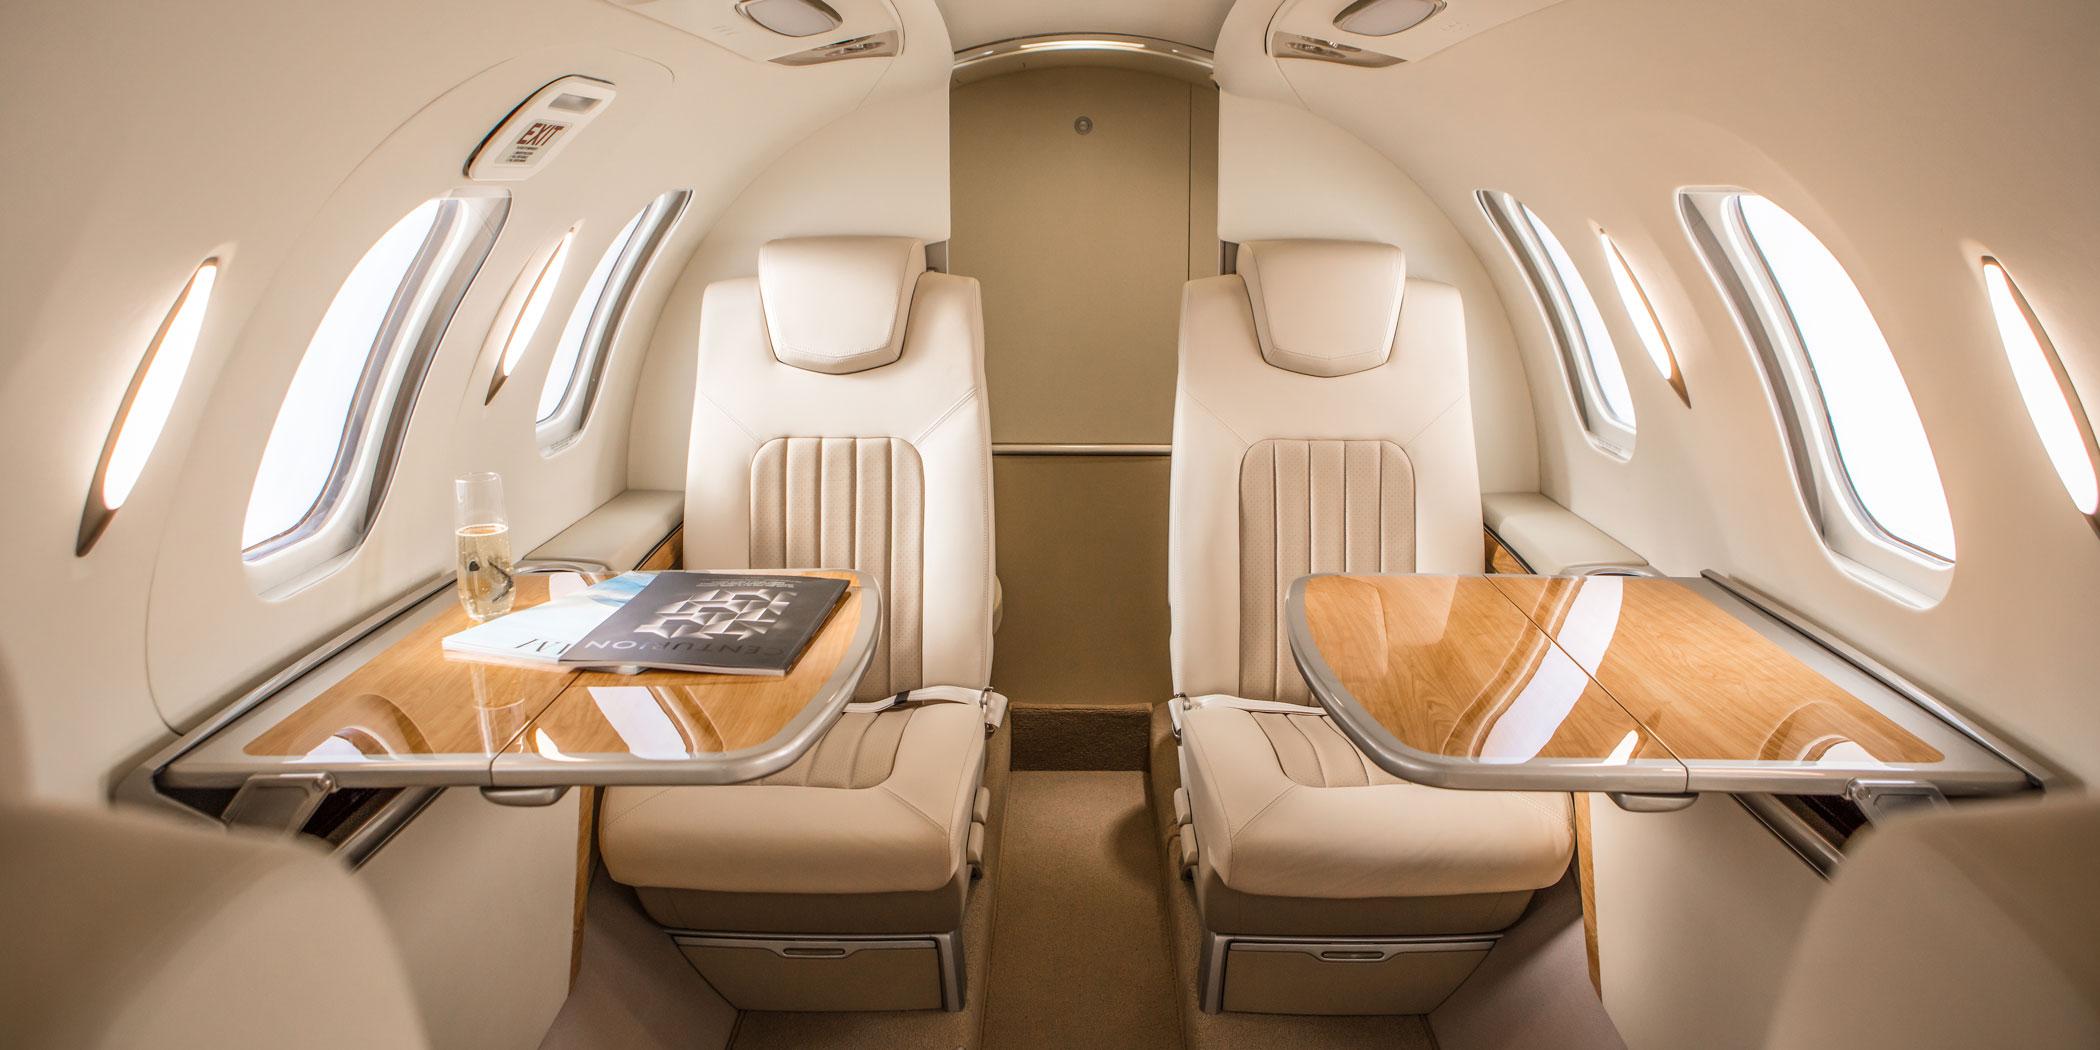 Hondajet Elite Business Jet Traveler